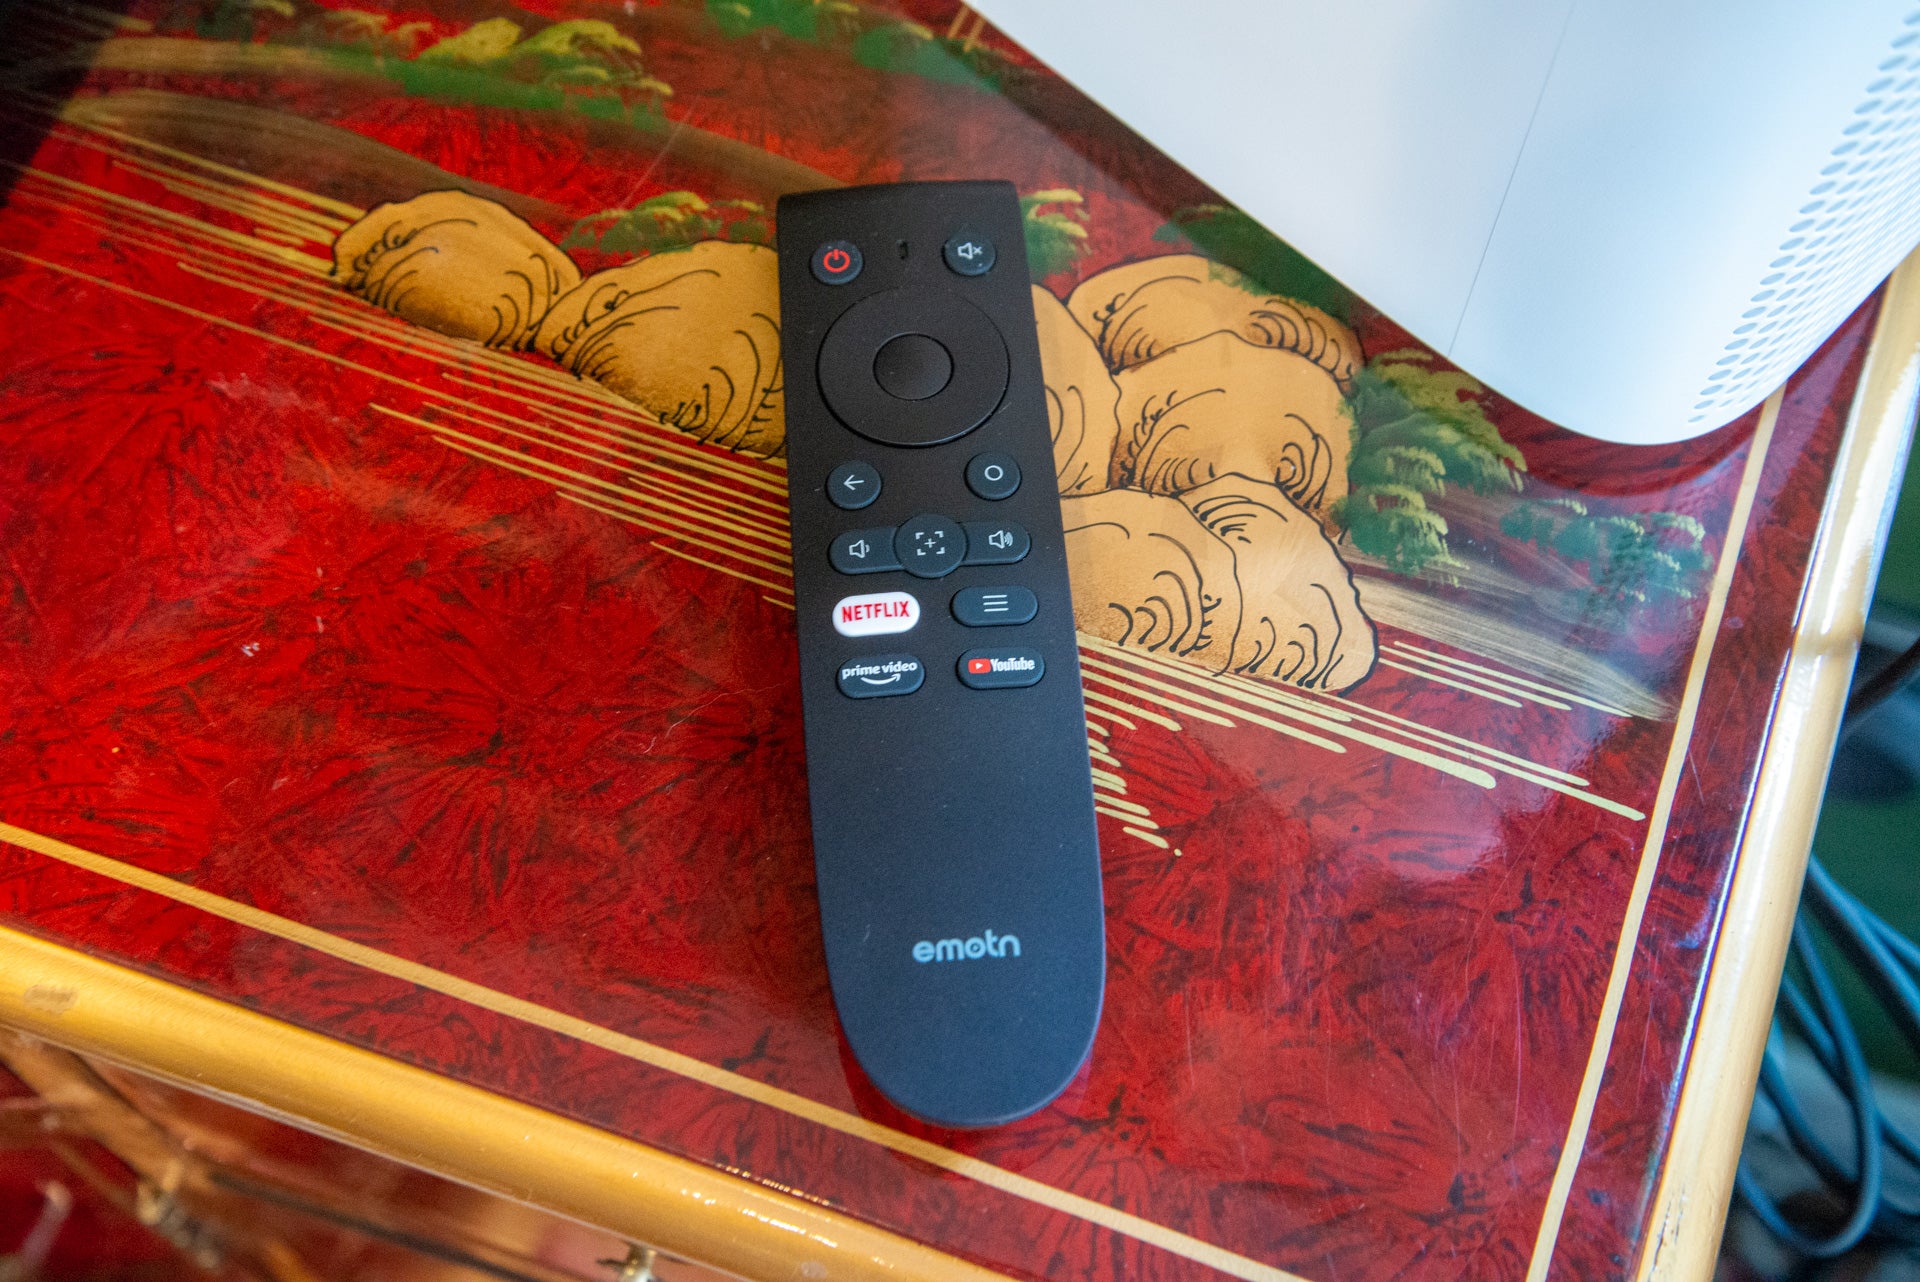 Emotn N1 remote control